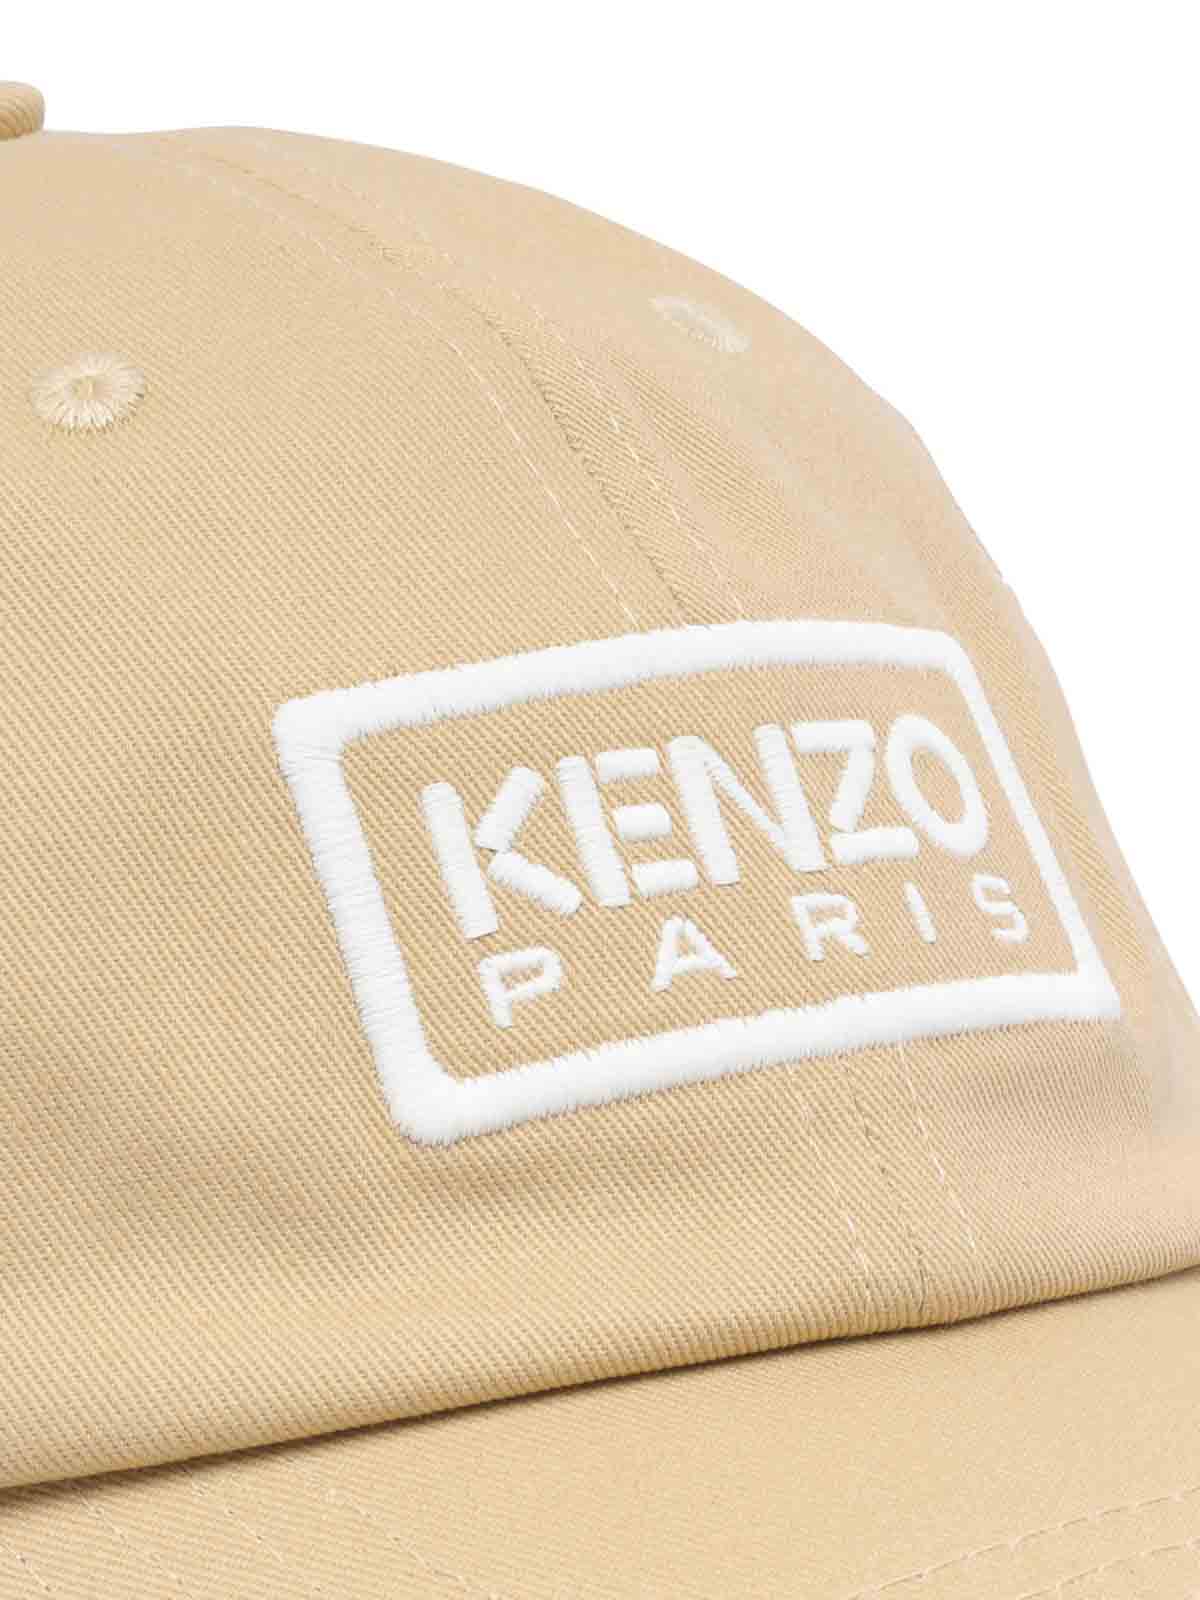 Shop Kenzo Sombrero - Beis In Beige